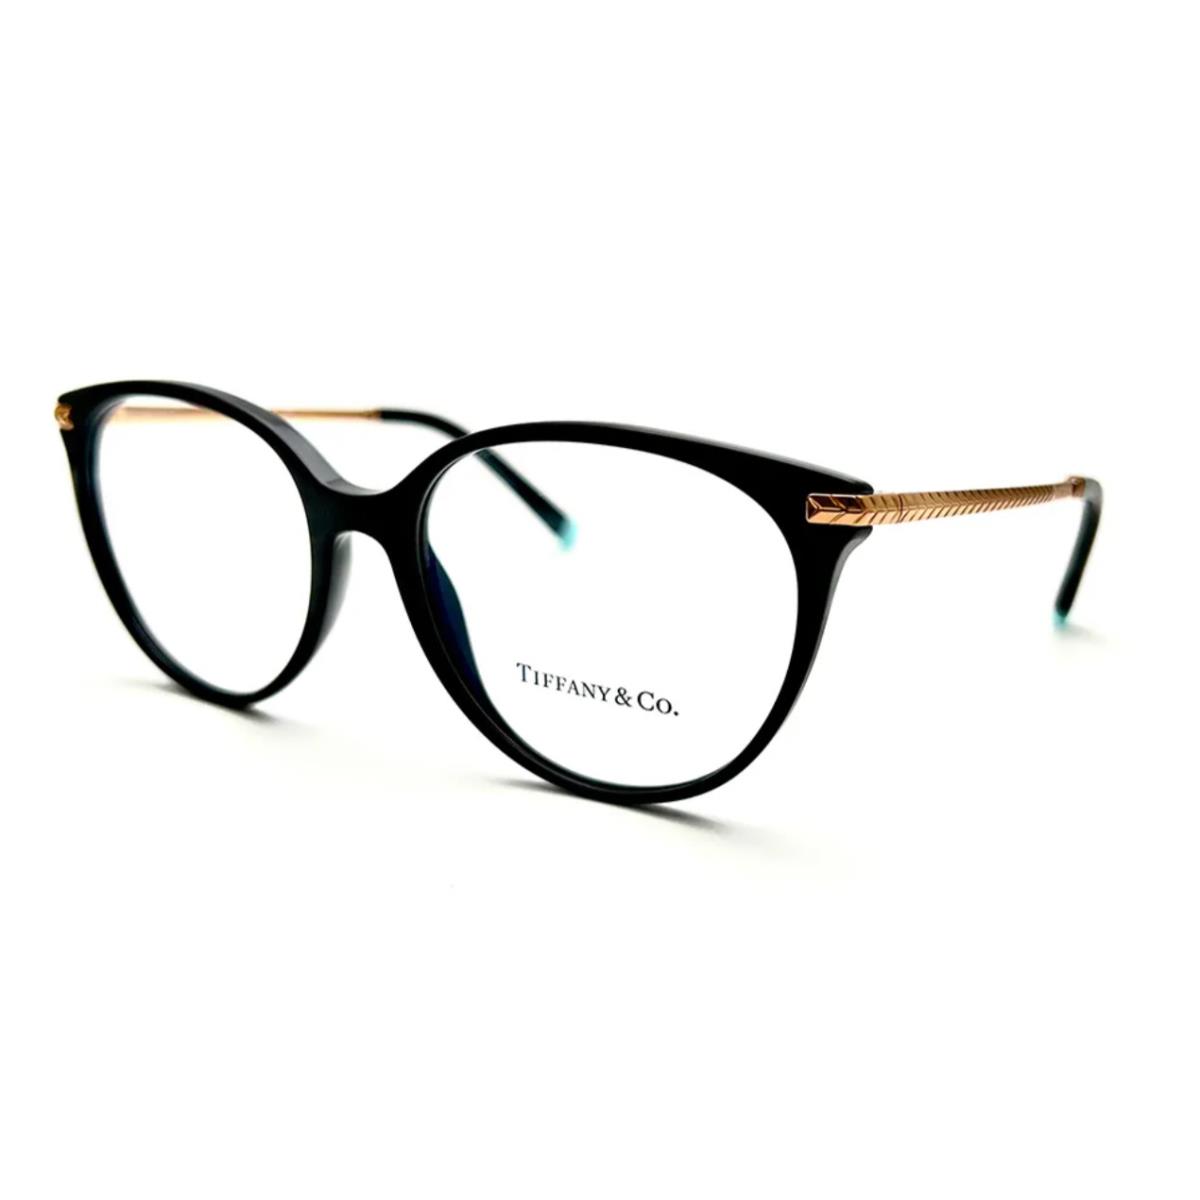 Tiffany Co. Eyeglasses TF 2209 8001 54-17 140 Black Gold Round Frames